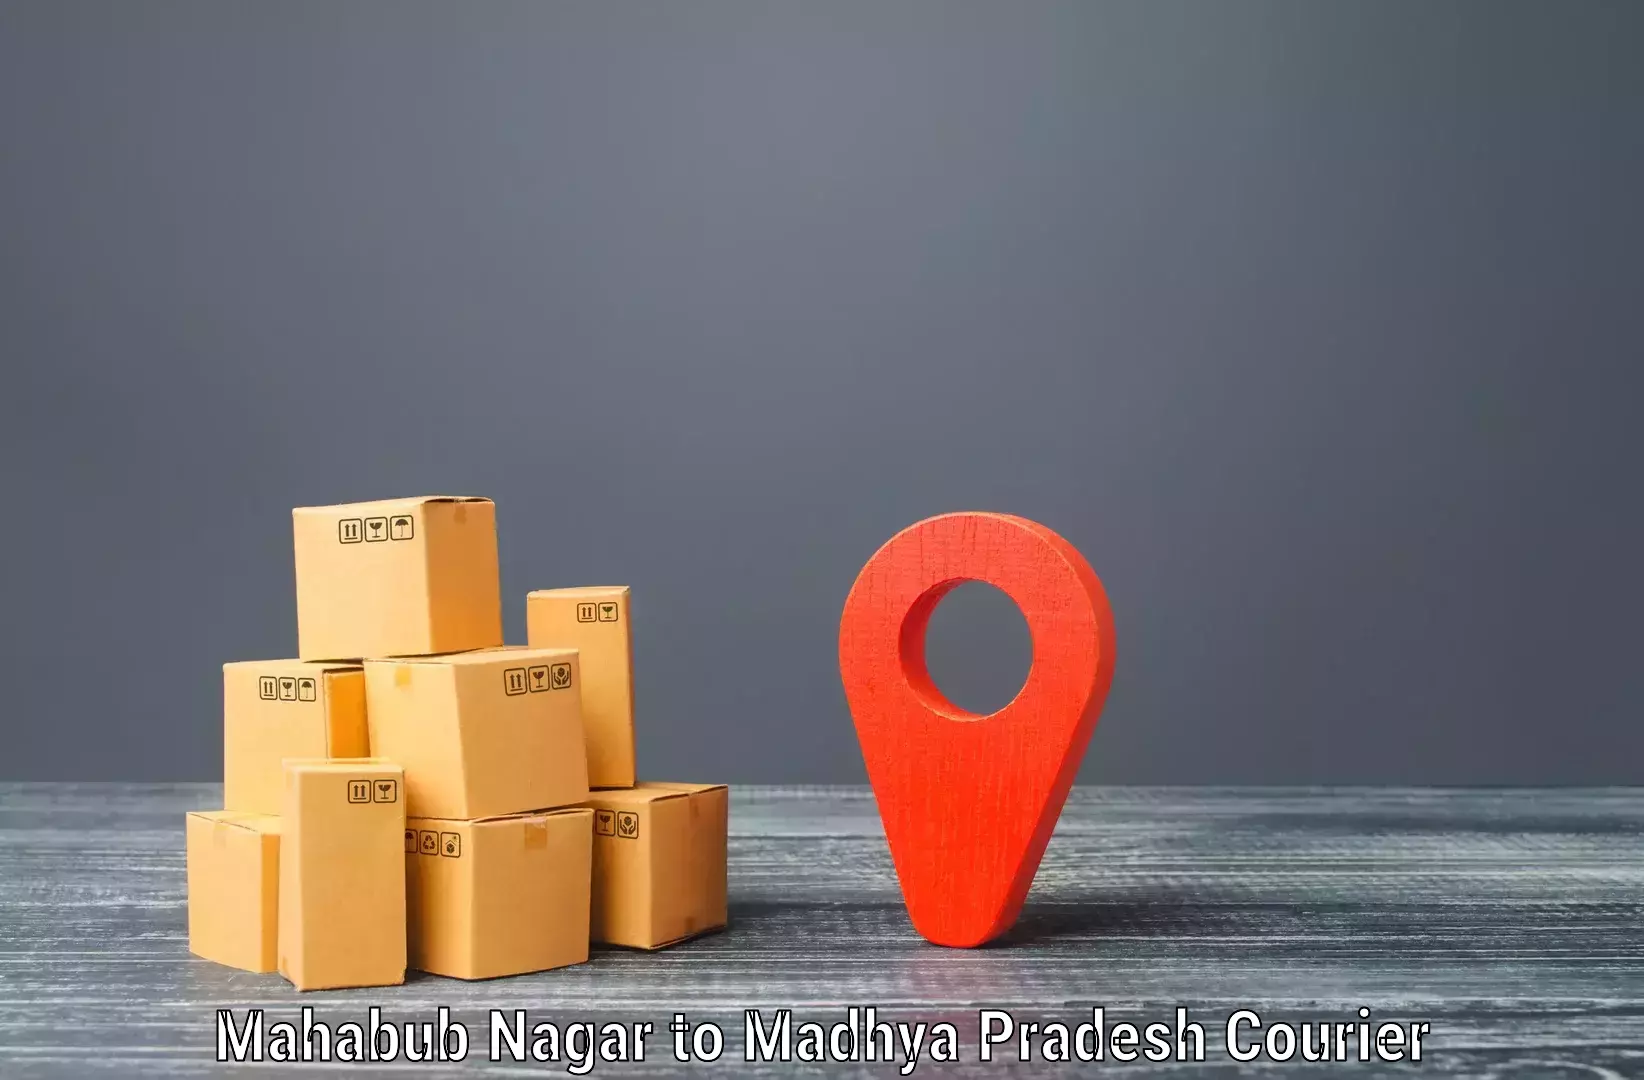 Doorstep delivery service Mahabub Nagar to Katni